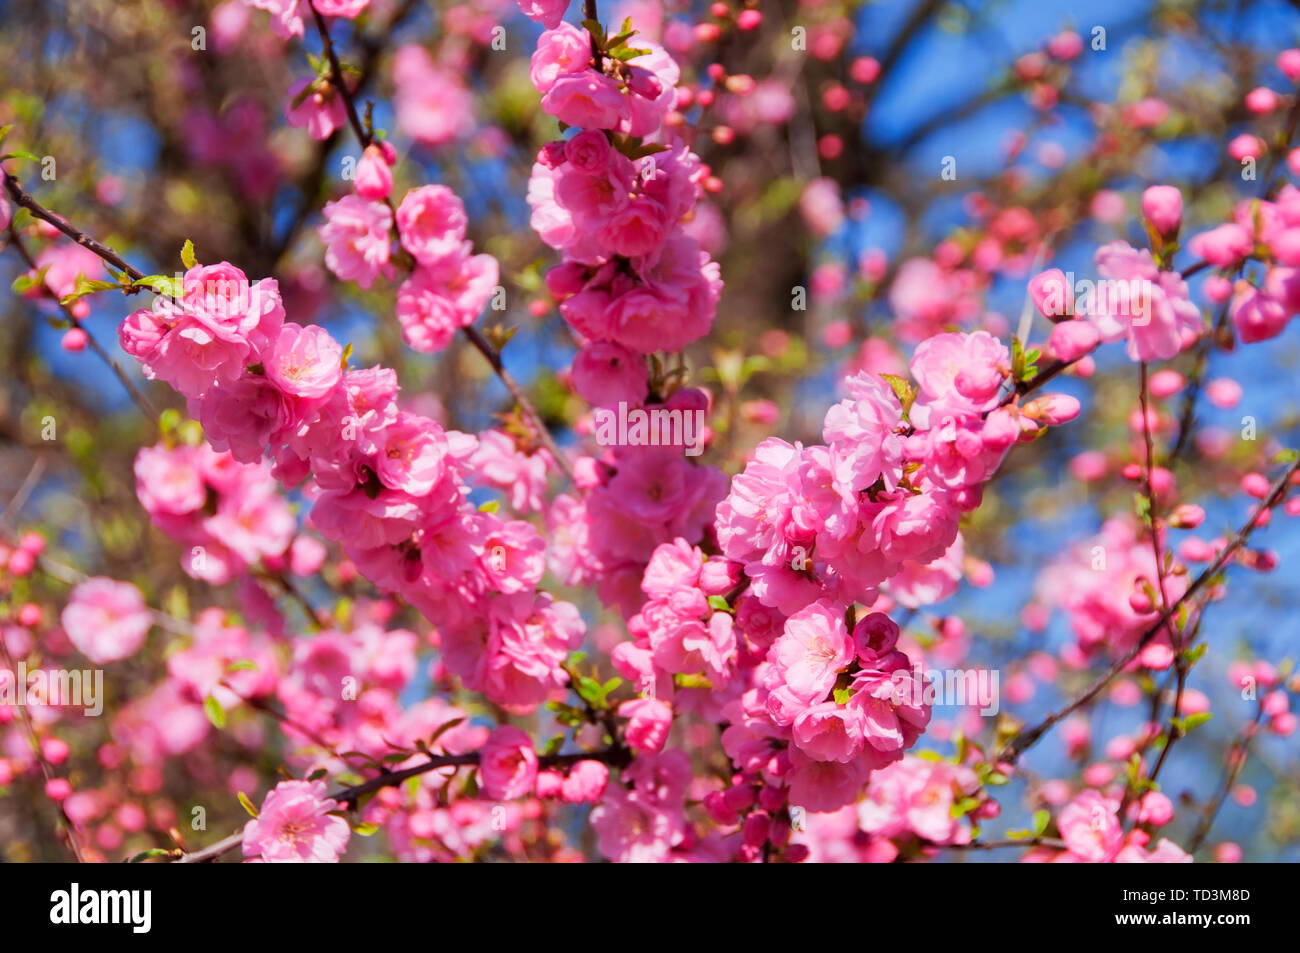 Albero in fiore con splendidi fiori di colore rosa a molla Foto Stock